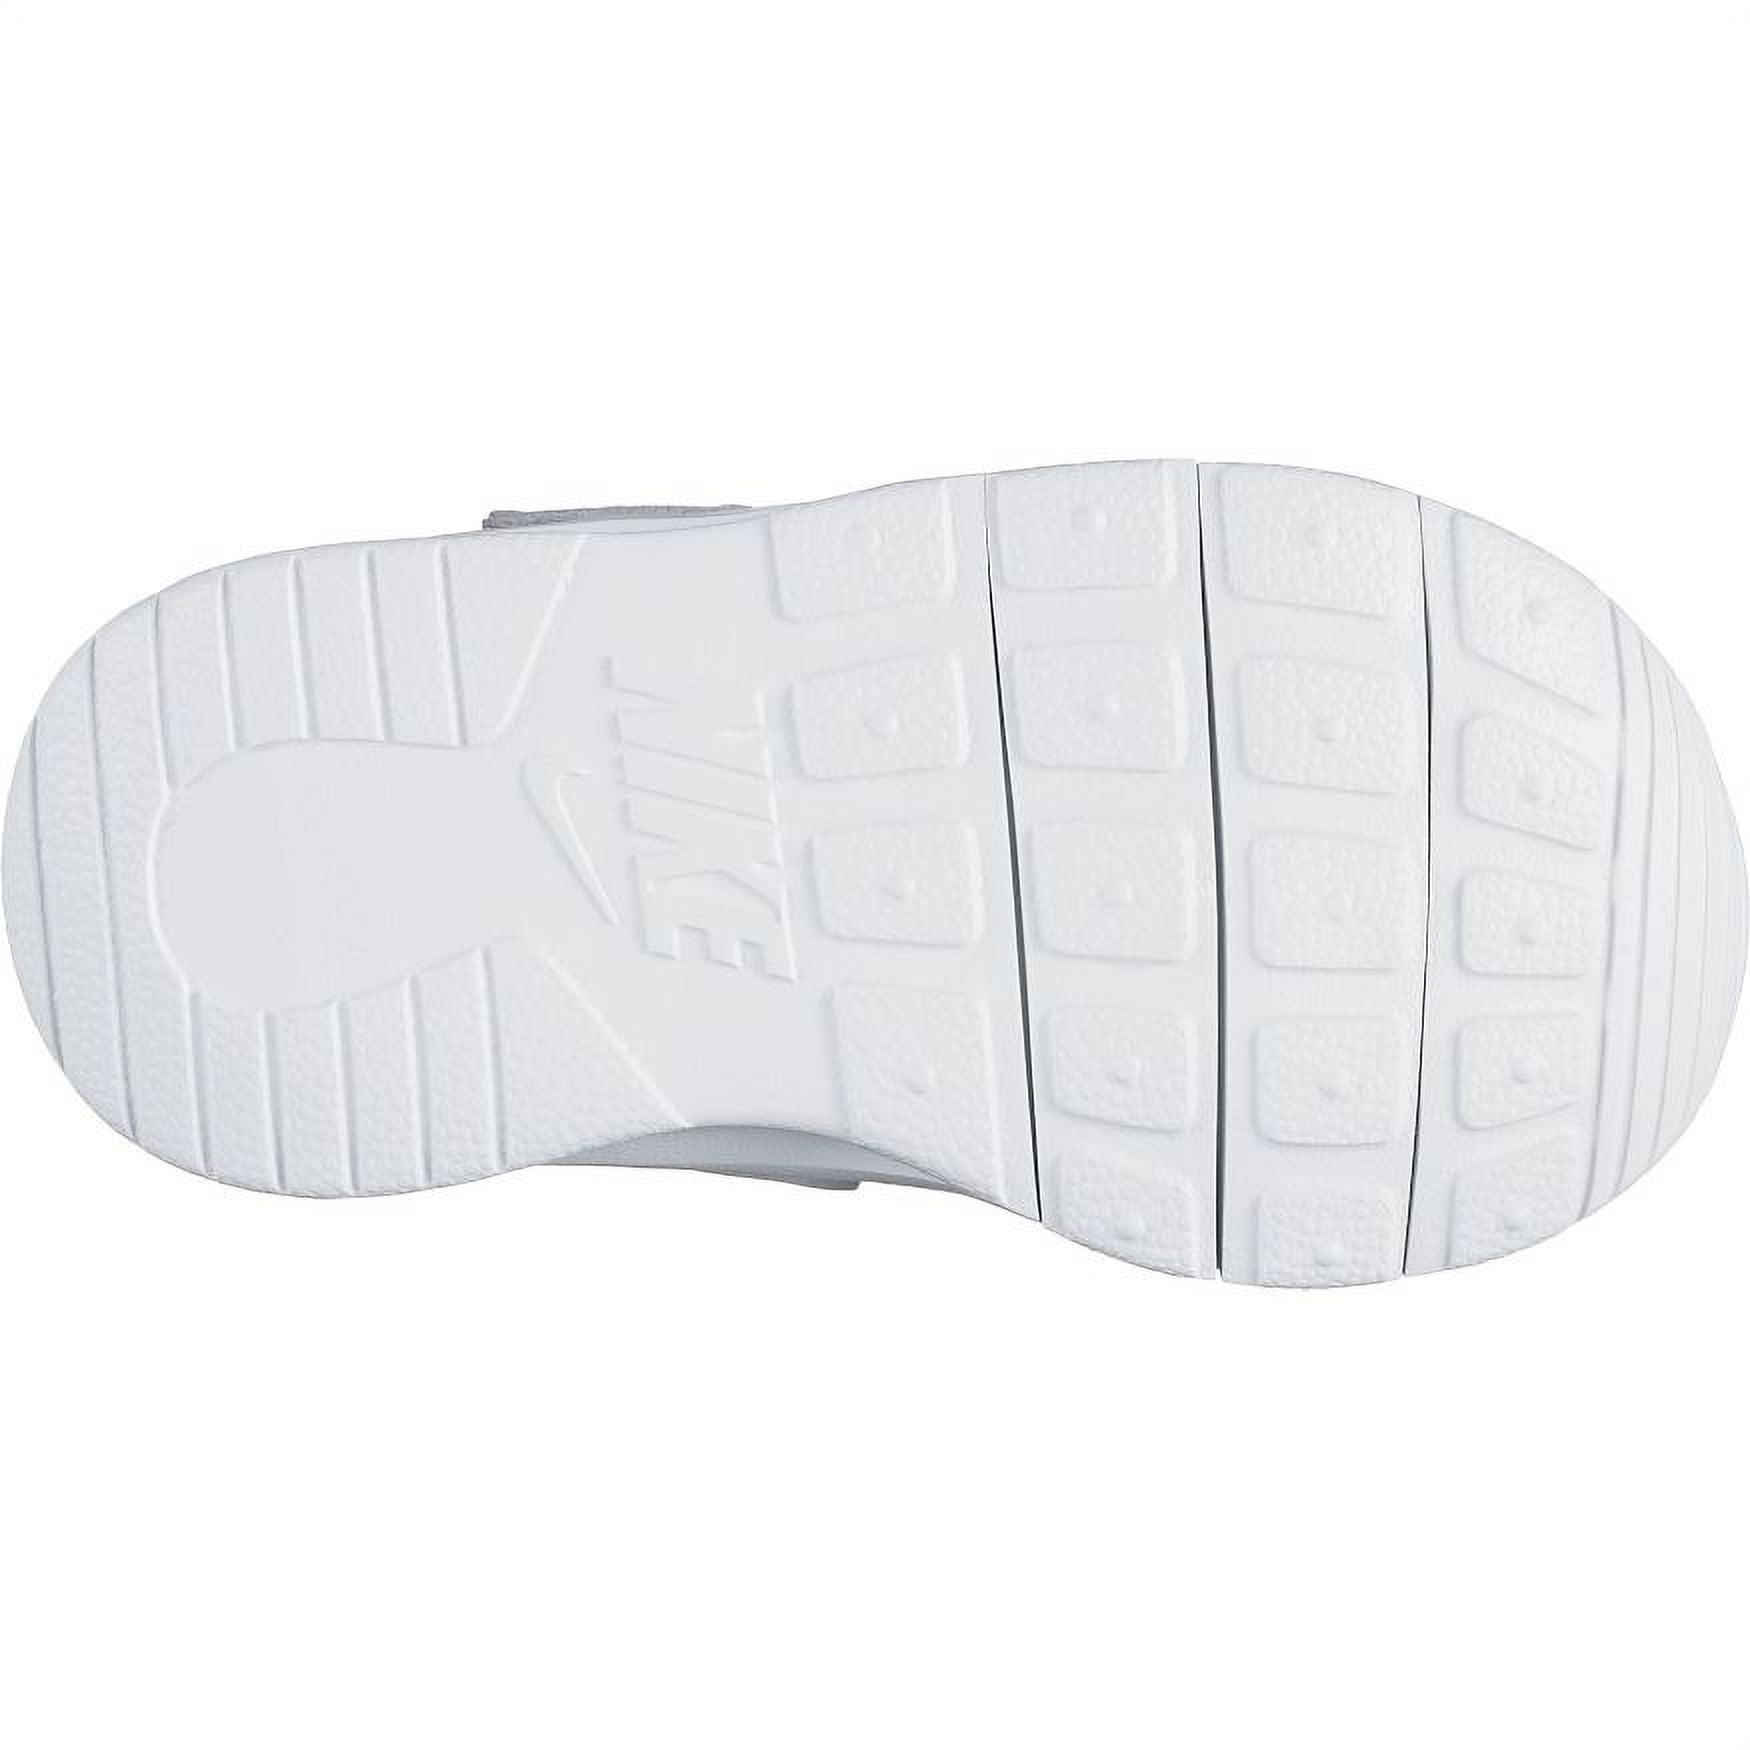 Nike 818383-012: Toddler Tajun Wolf Grey White White Running Sneakers (4 M  US Toddler)